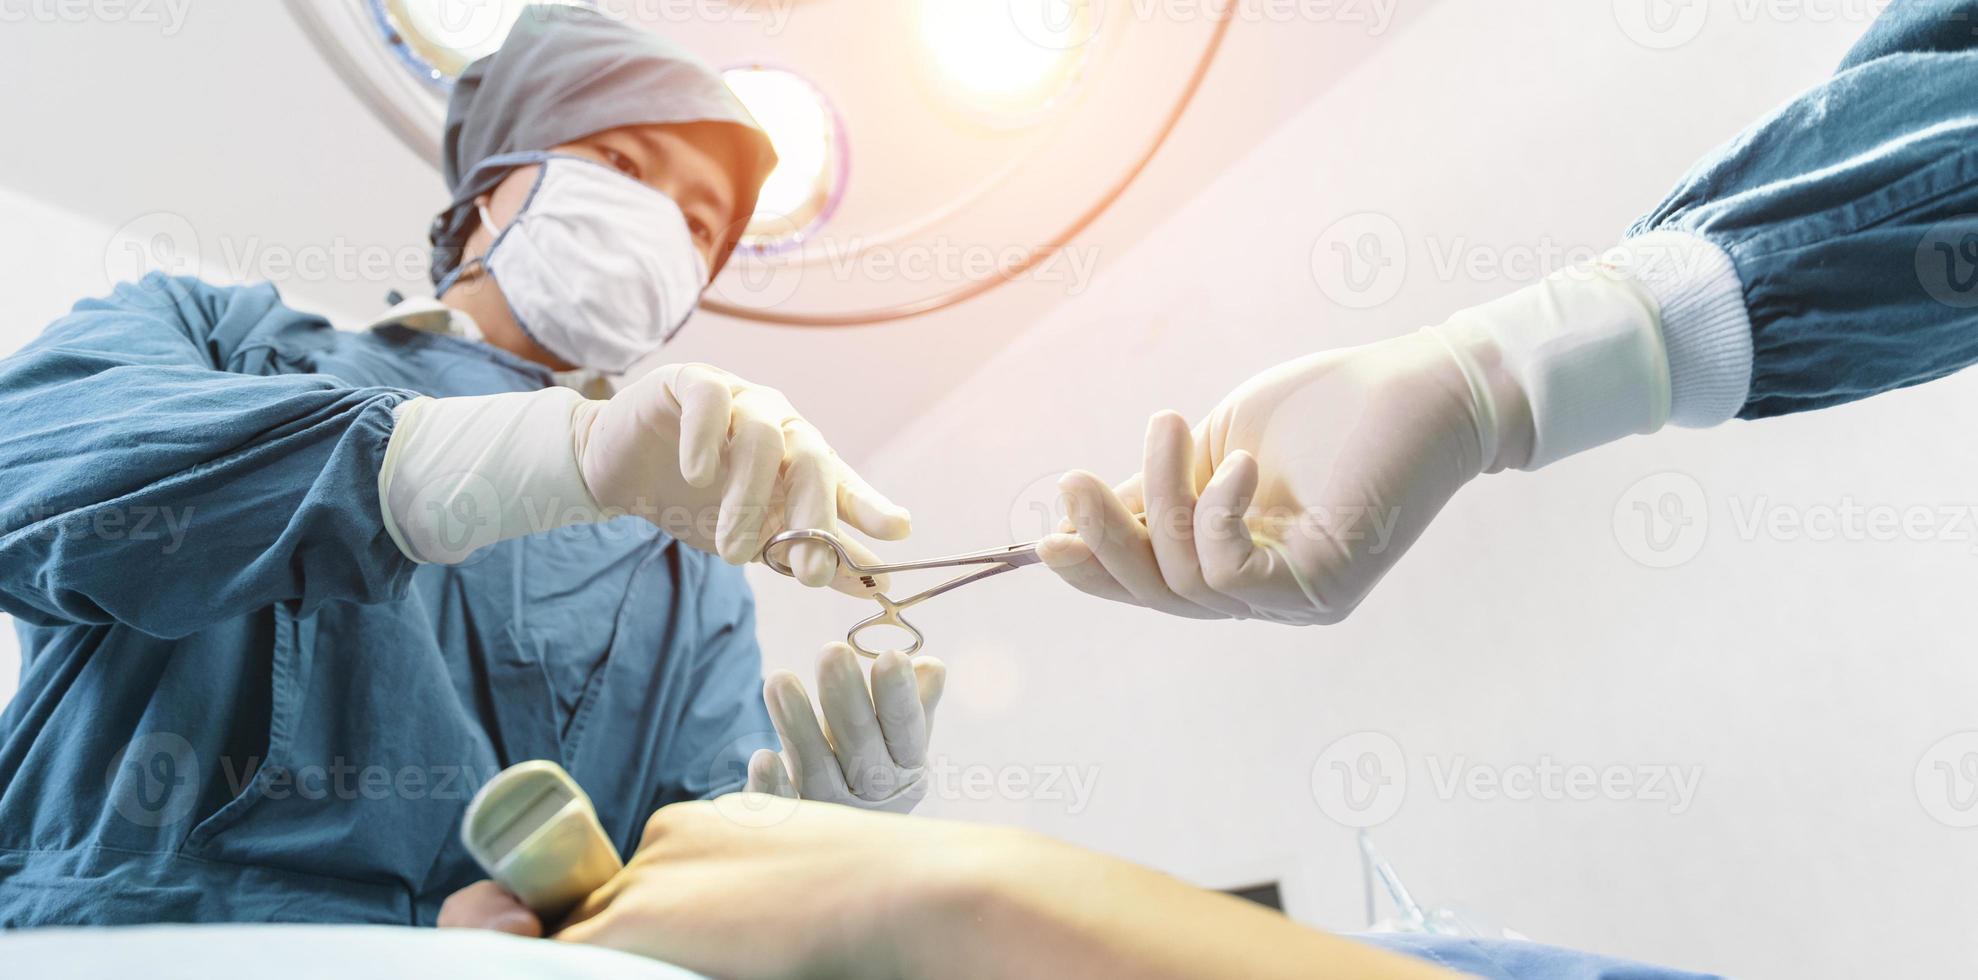 assistent deelt instrumenten uit aan chirurgen tijdens operatie. chirurgie en noodconcept foto